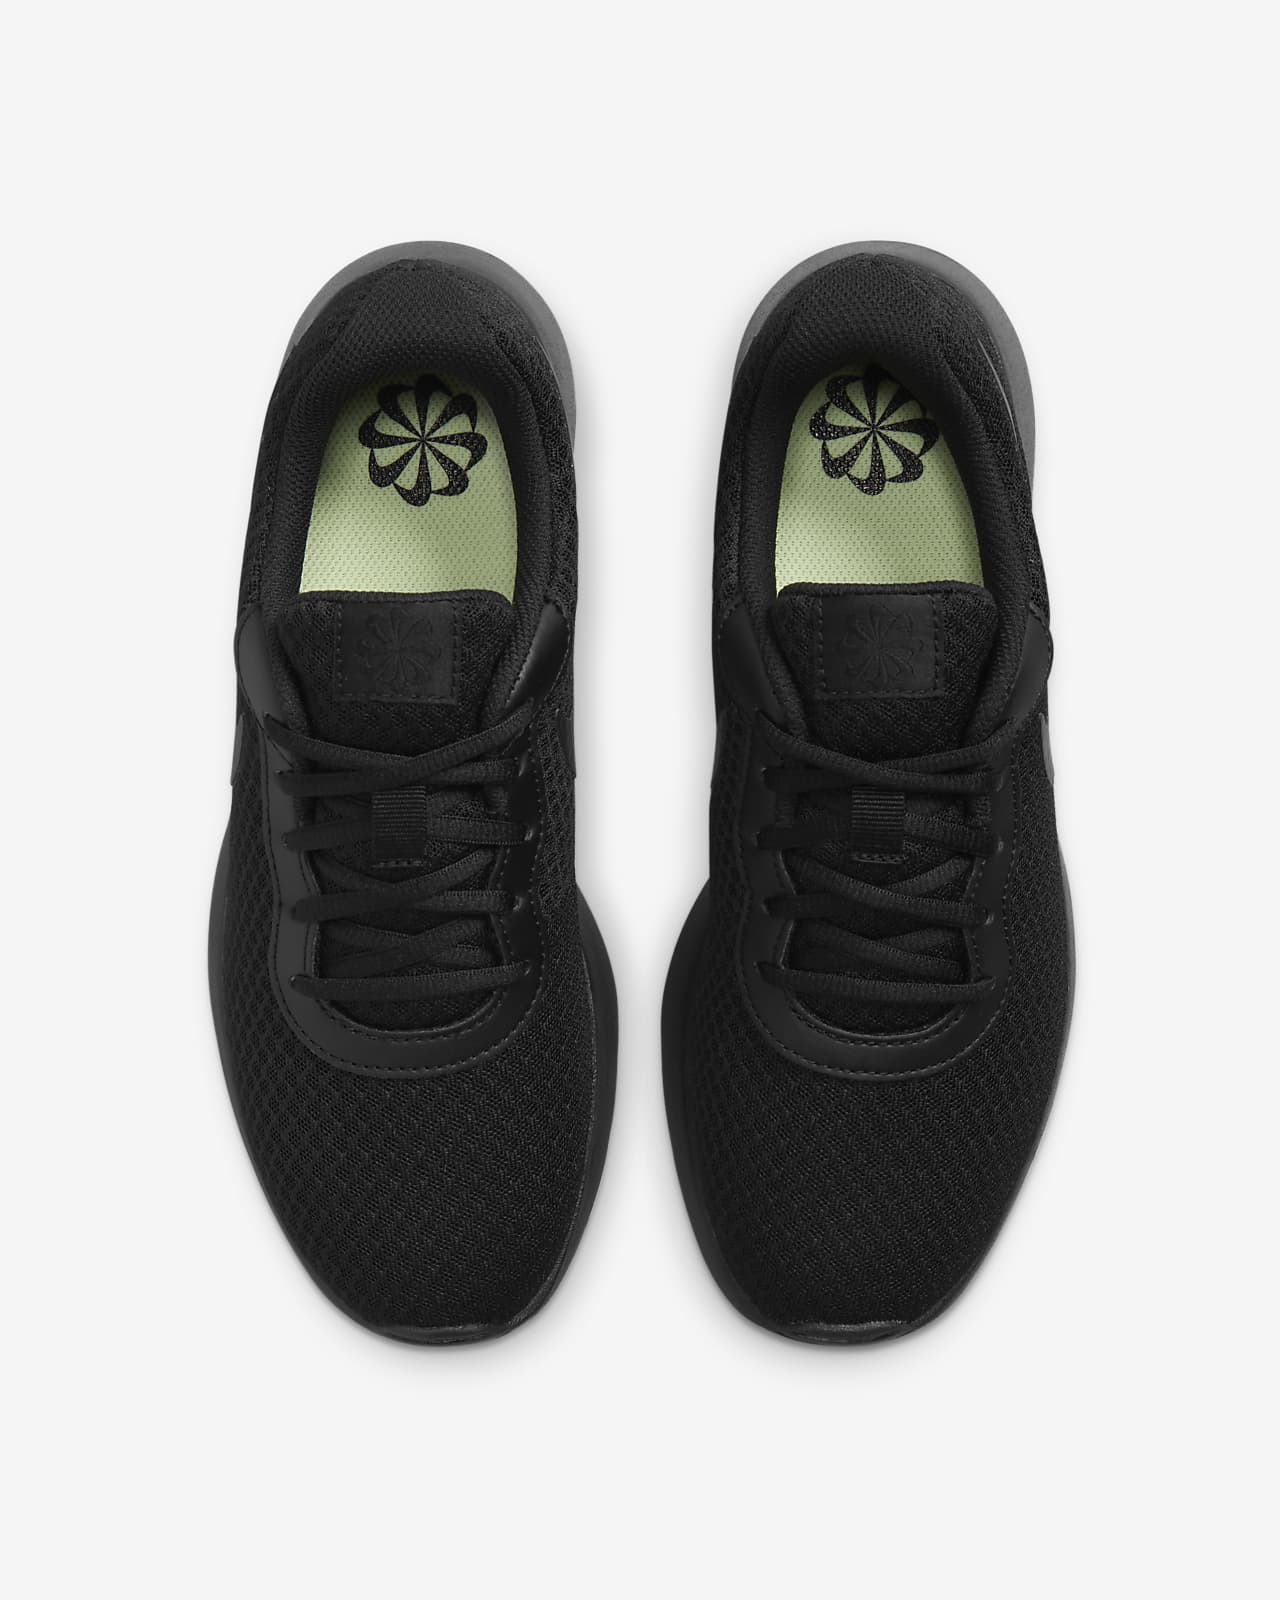 Grey Textured Sweater + Leggings + Black Nike Tanjun Sneakers